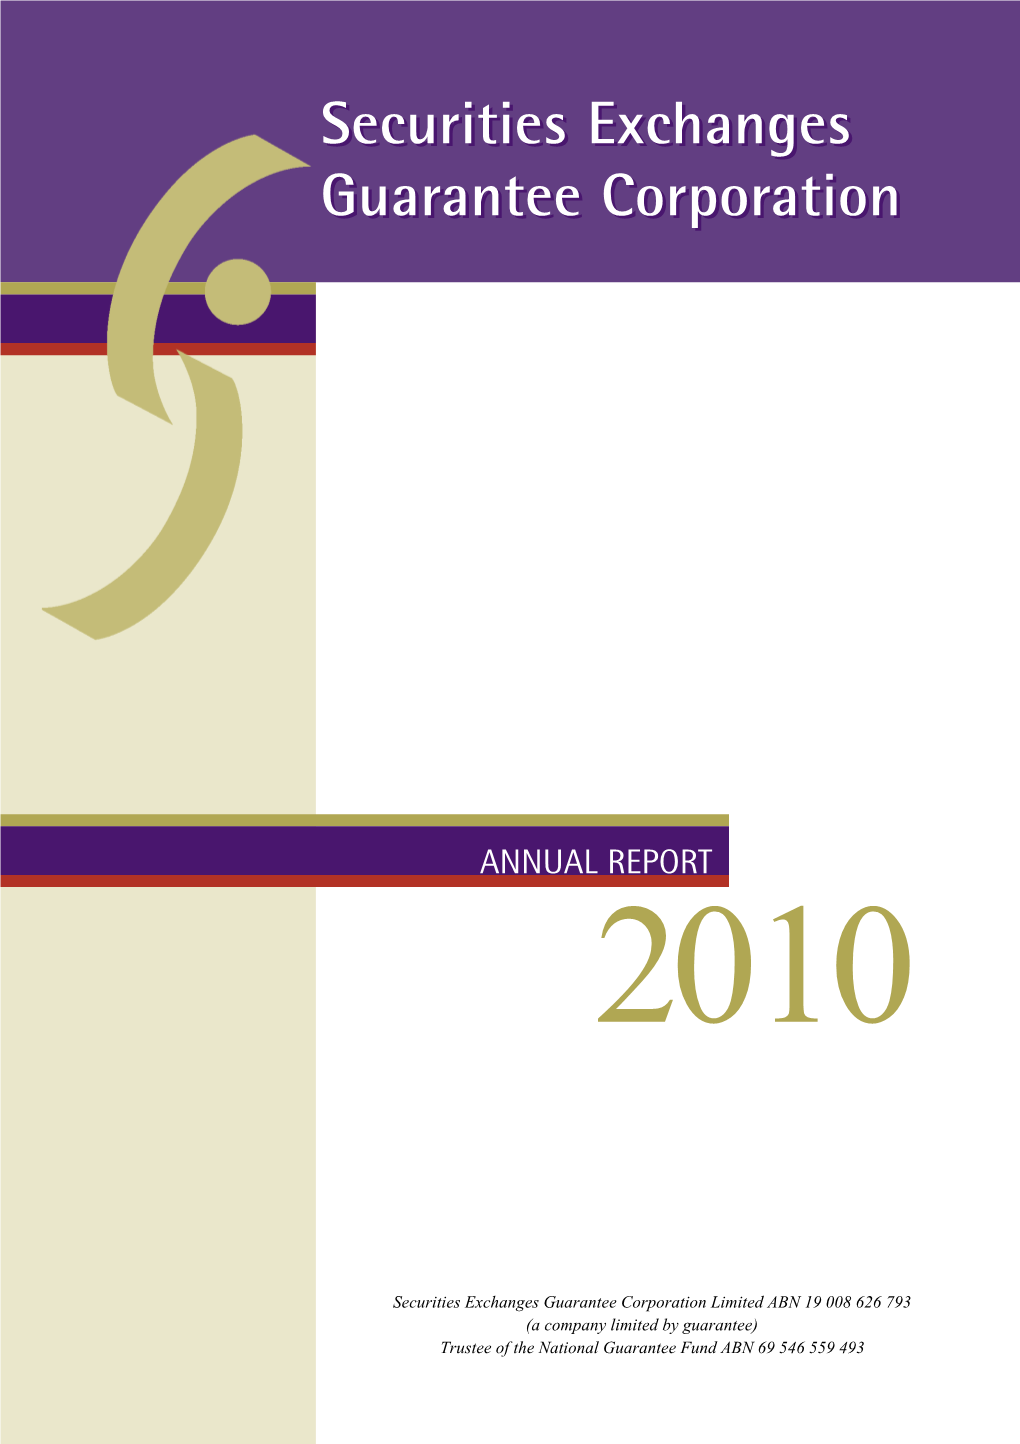 Download the 2010 Securities Exchanges Guarantee